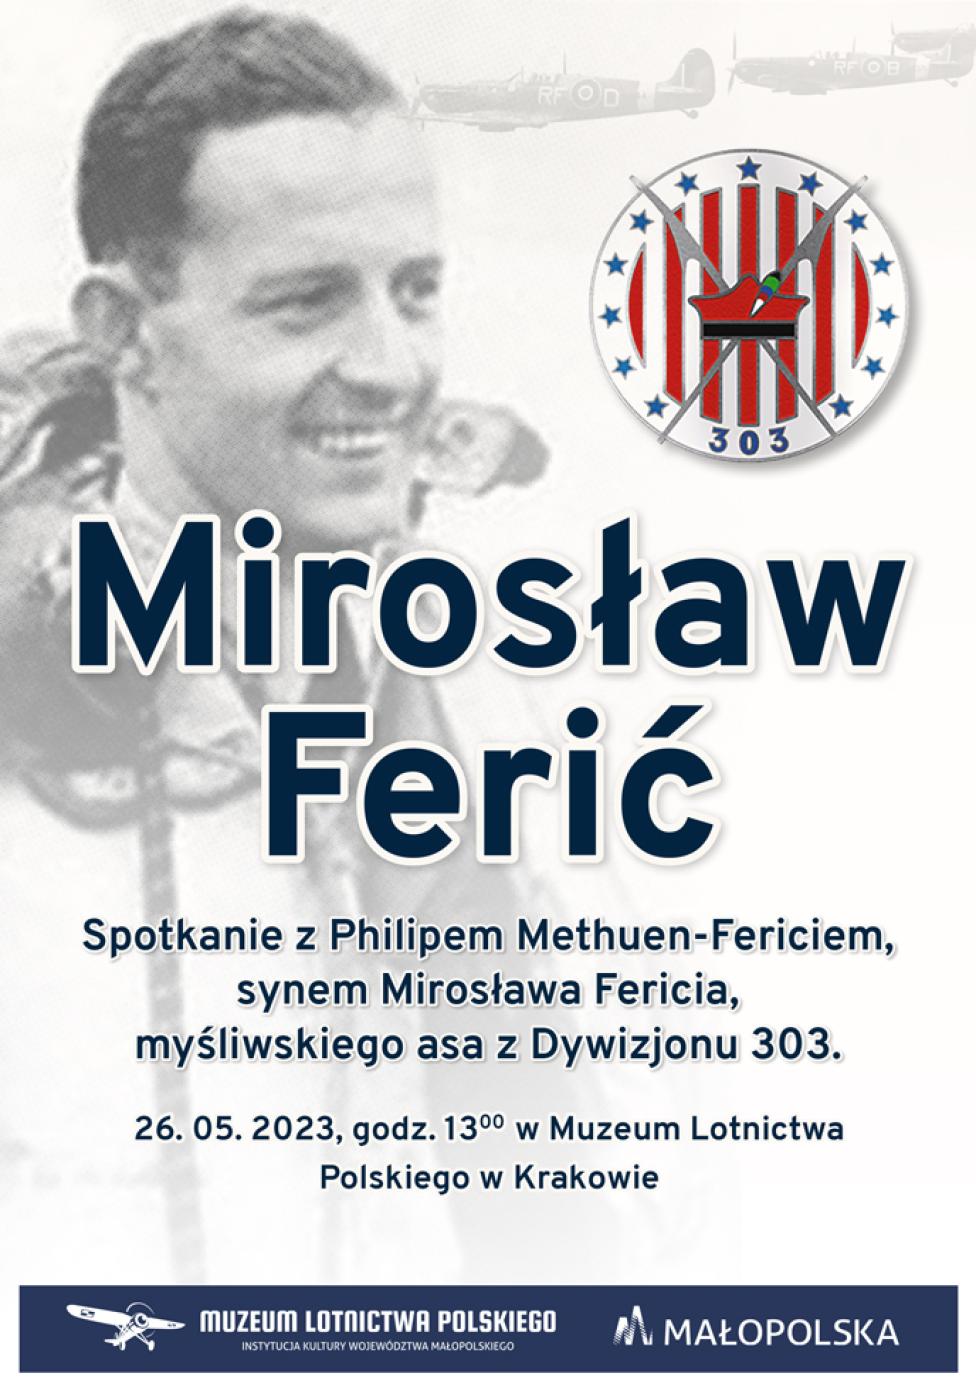 Spotkanie z synem asa myśliwskiego z Dywizjonu 303, Mirosława Fericia w Krakowie - plakat (fot. Muzeum Lotnictwa Polskiego)